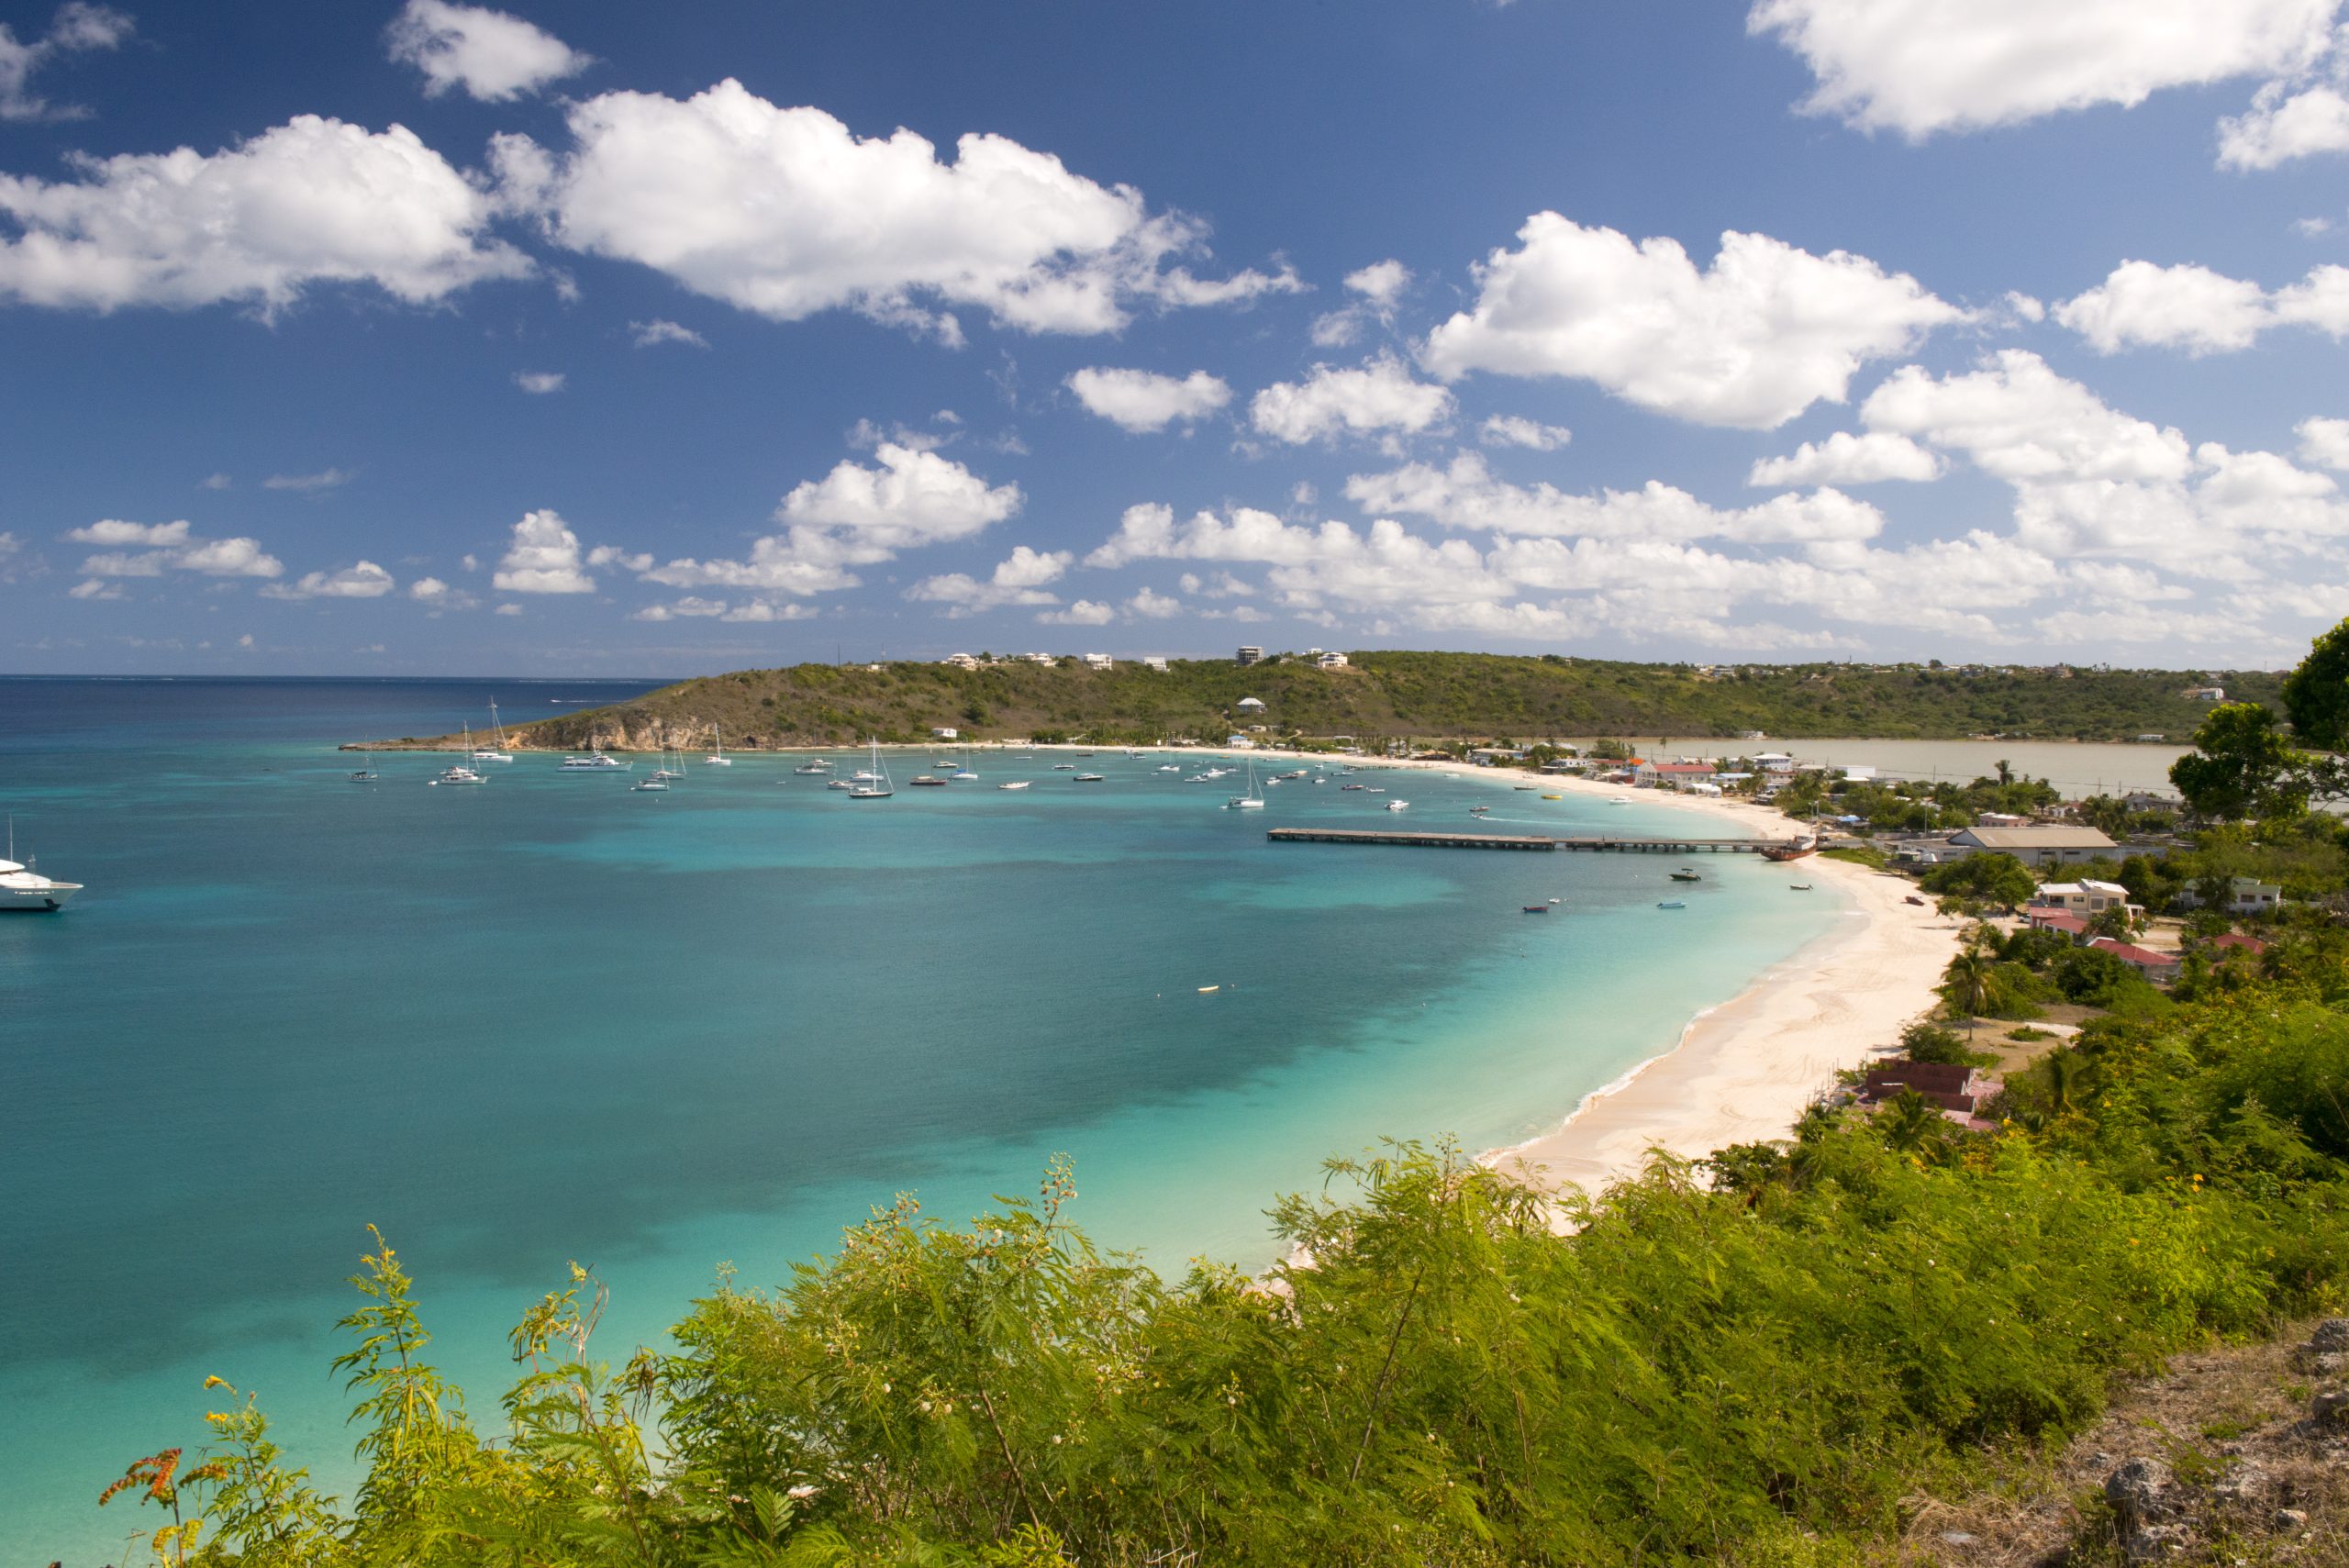 Anguilla Island